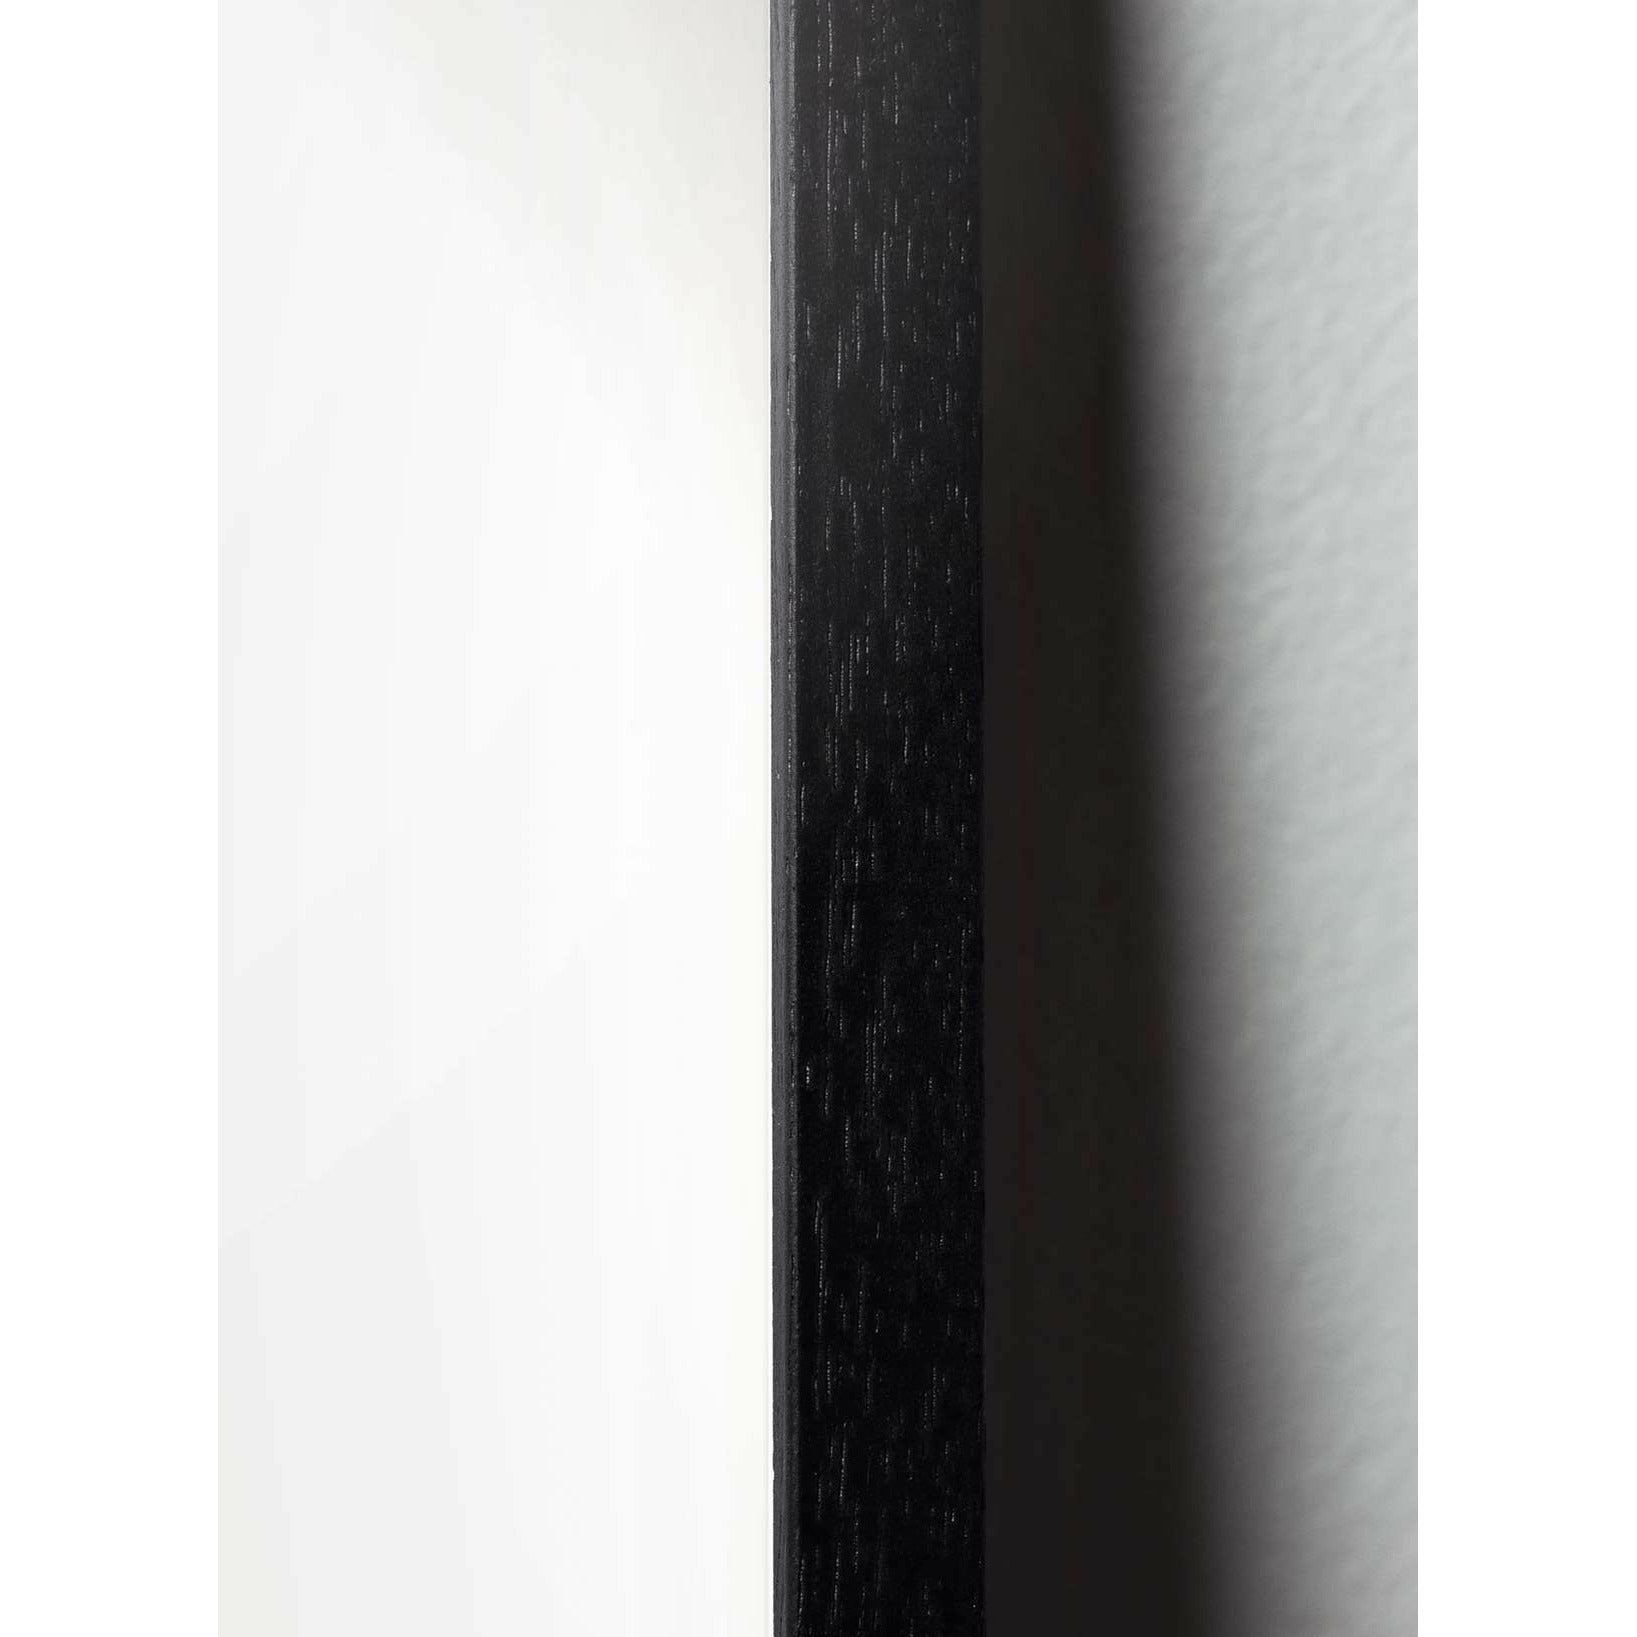 Poster in formato croce di uovo di prima cosa, cornice in legno laccato nero A5, nero